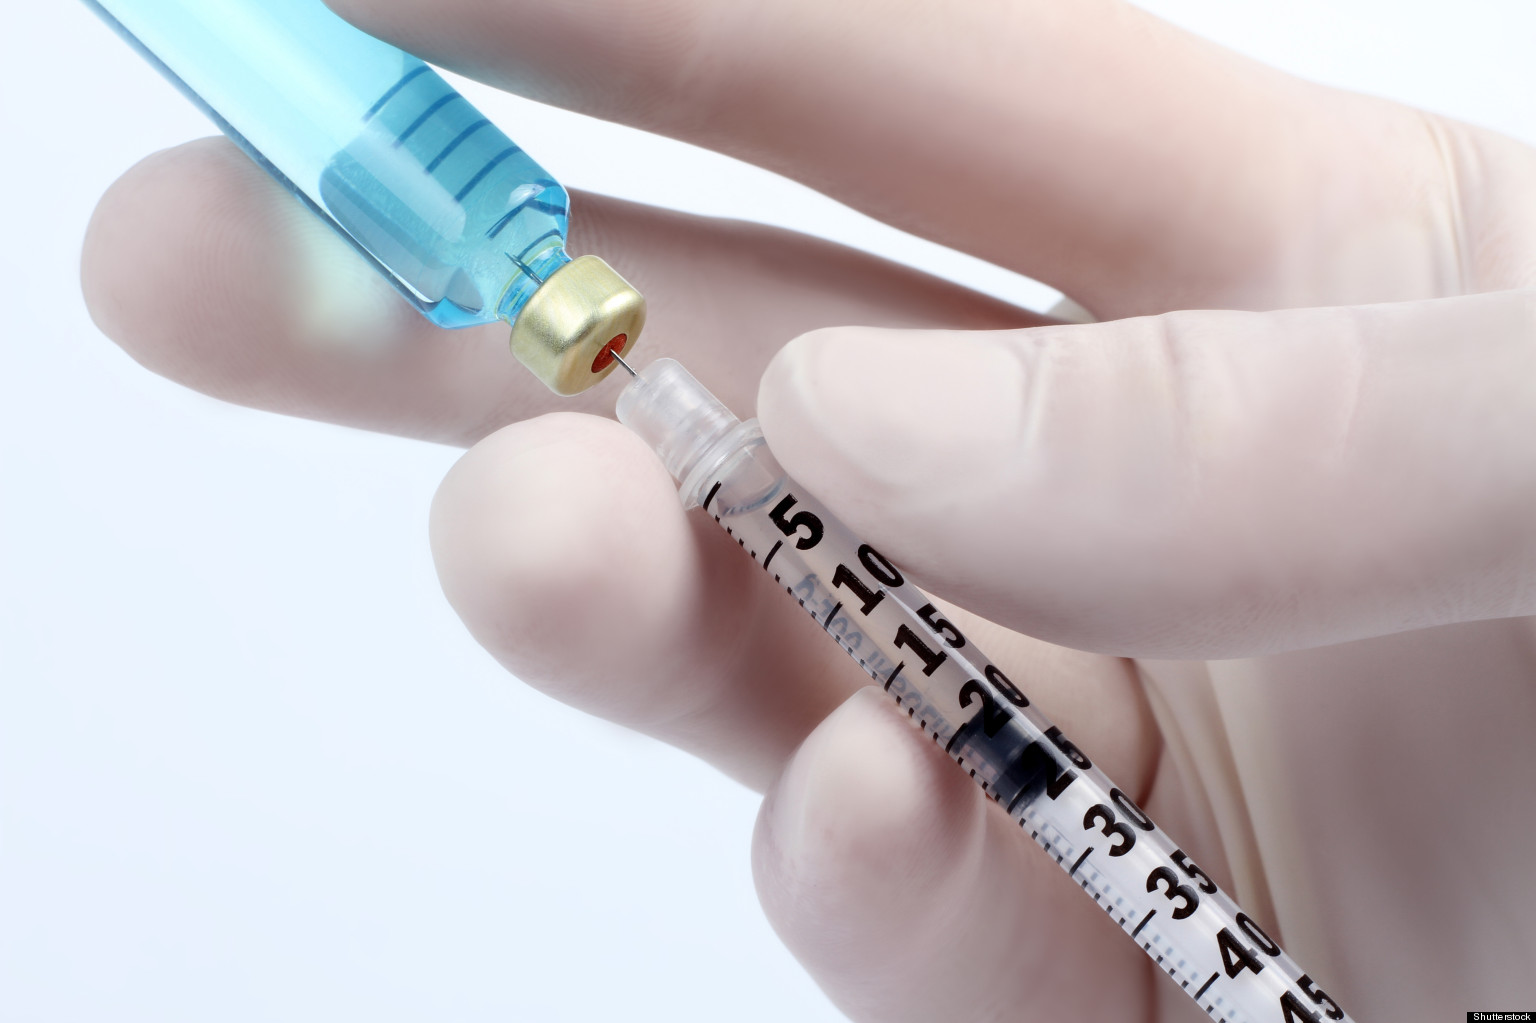 Indian Scientists Develop Hepatitis C Vaccine